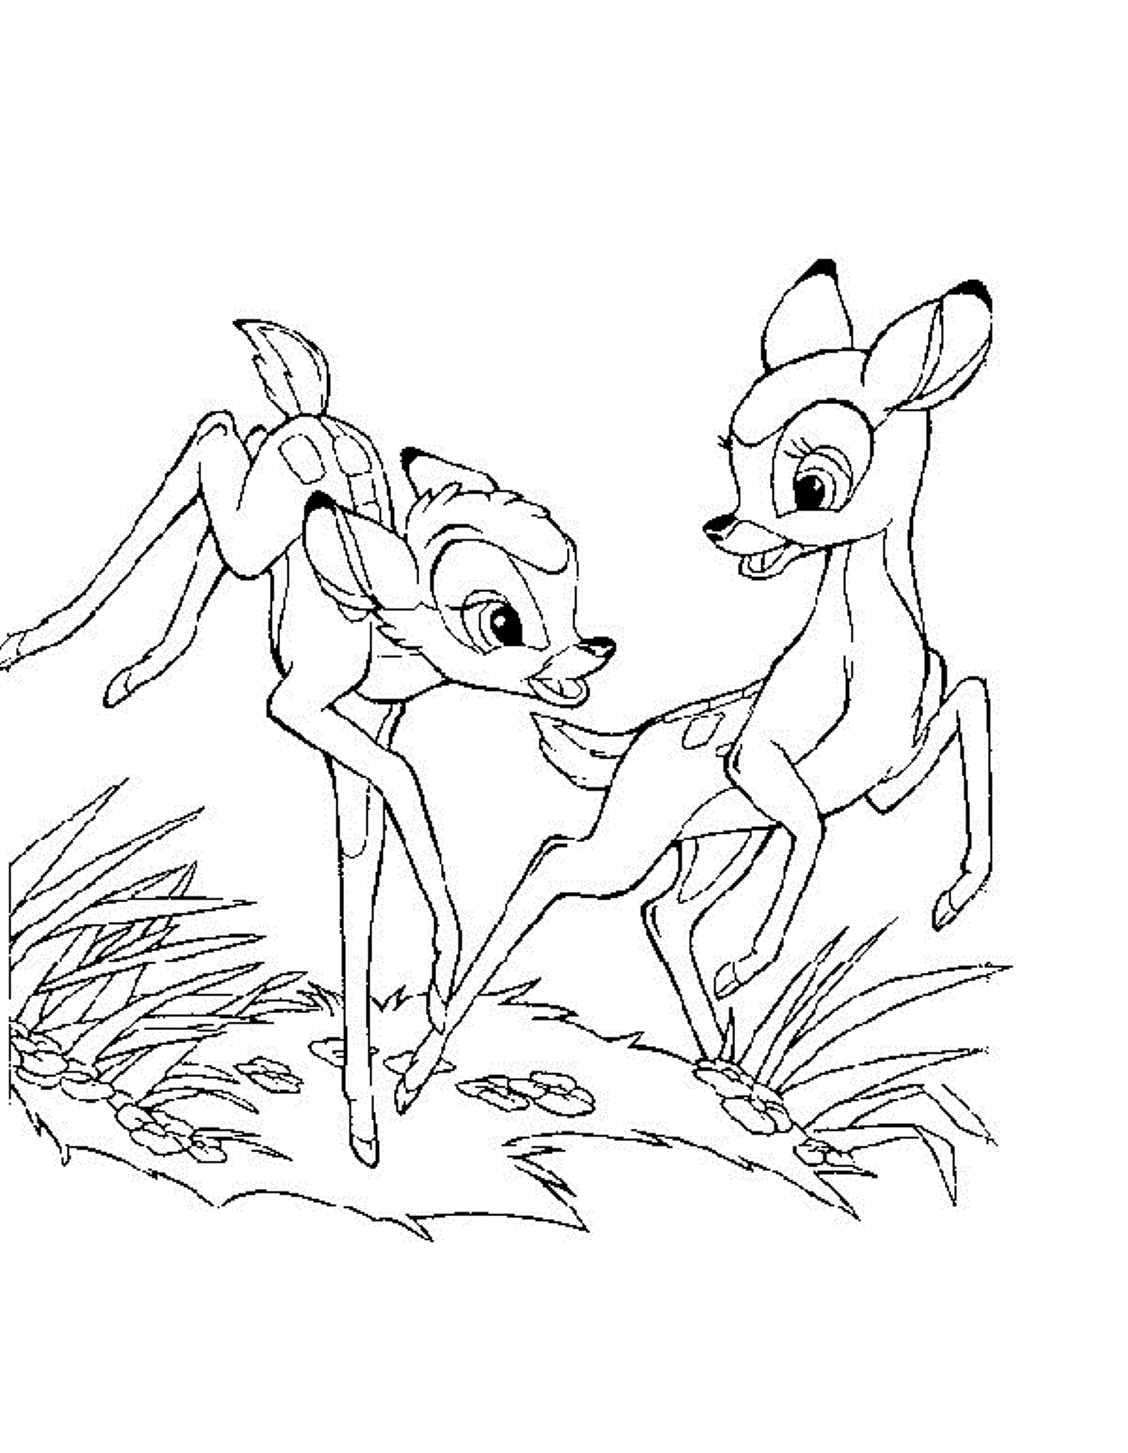 Bambi e amiga brincando